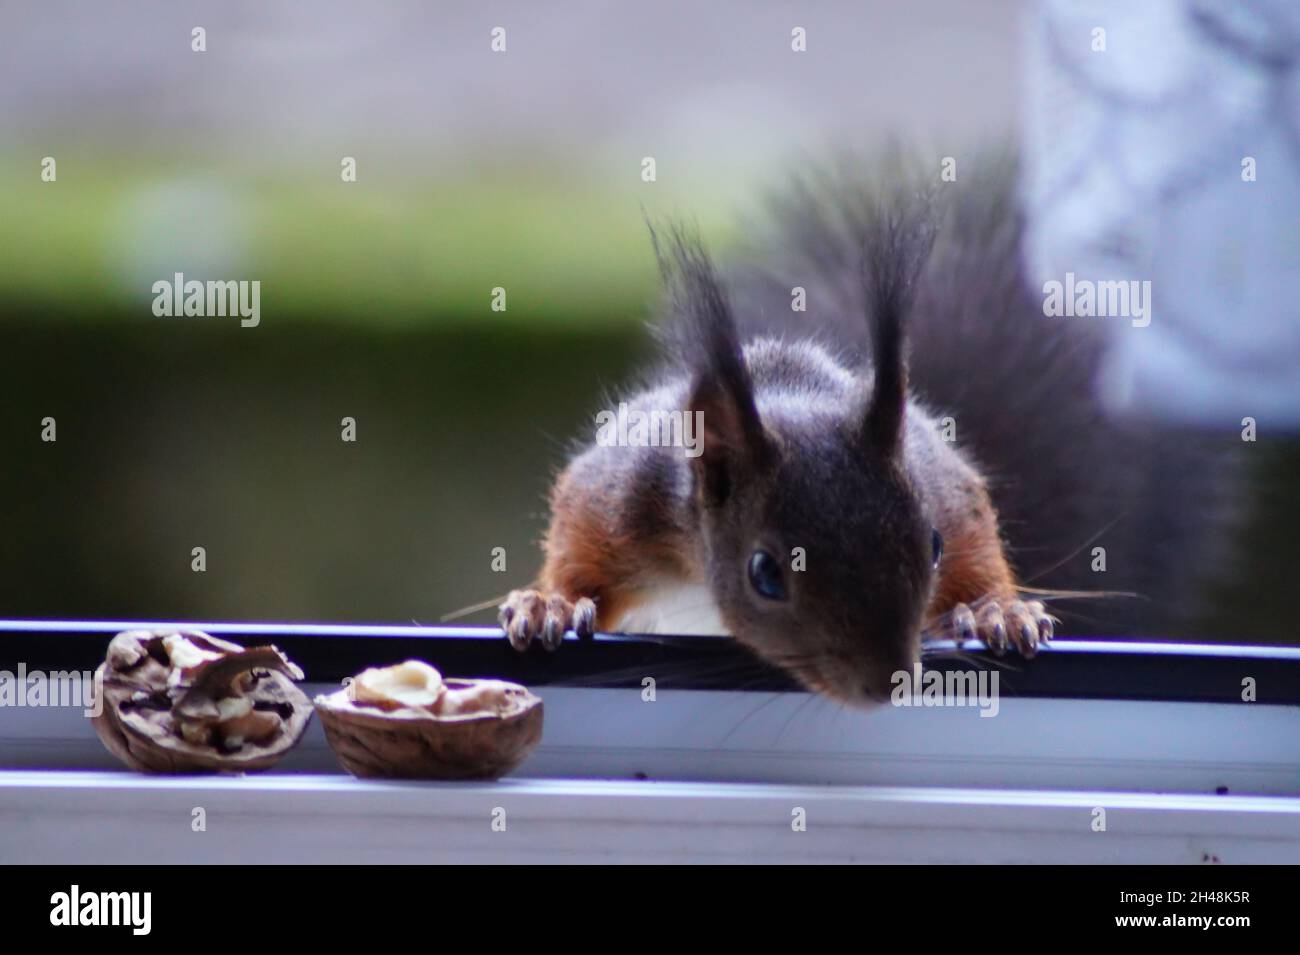 Eichhörnchen - Besuch am Fenster Stock Photo